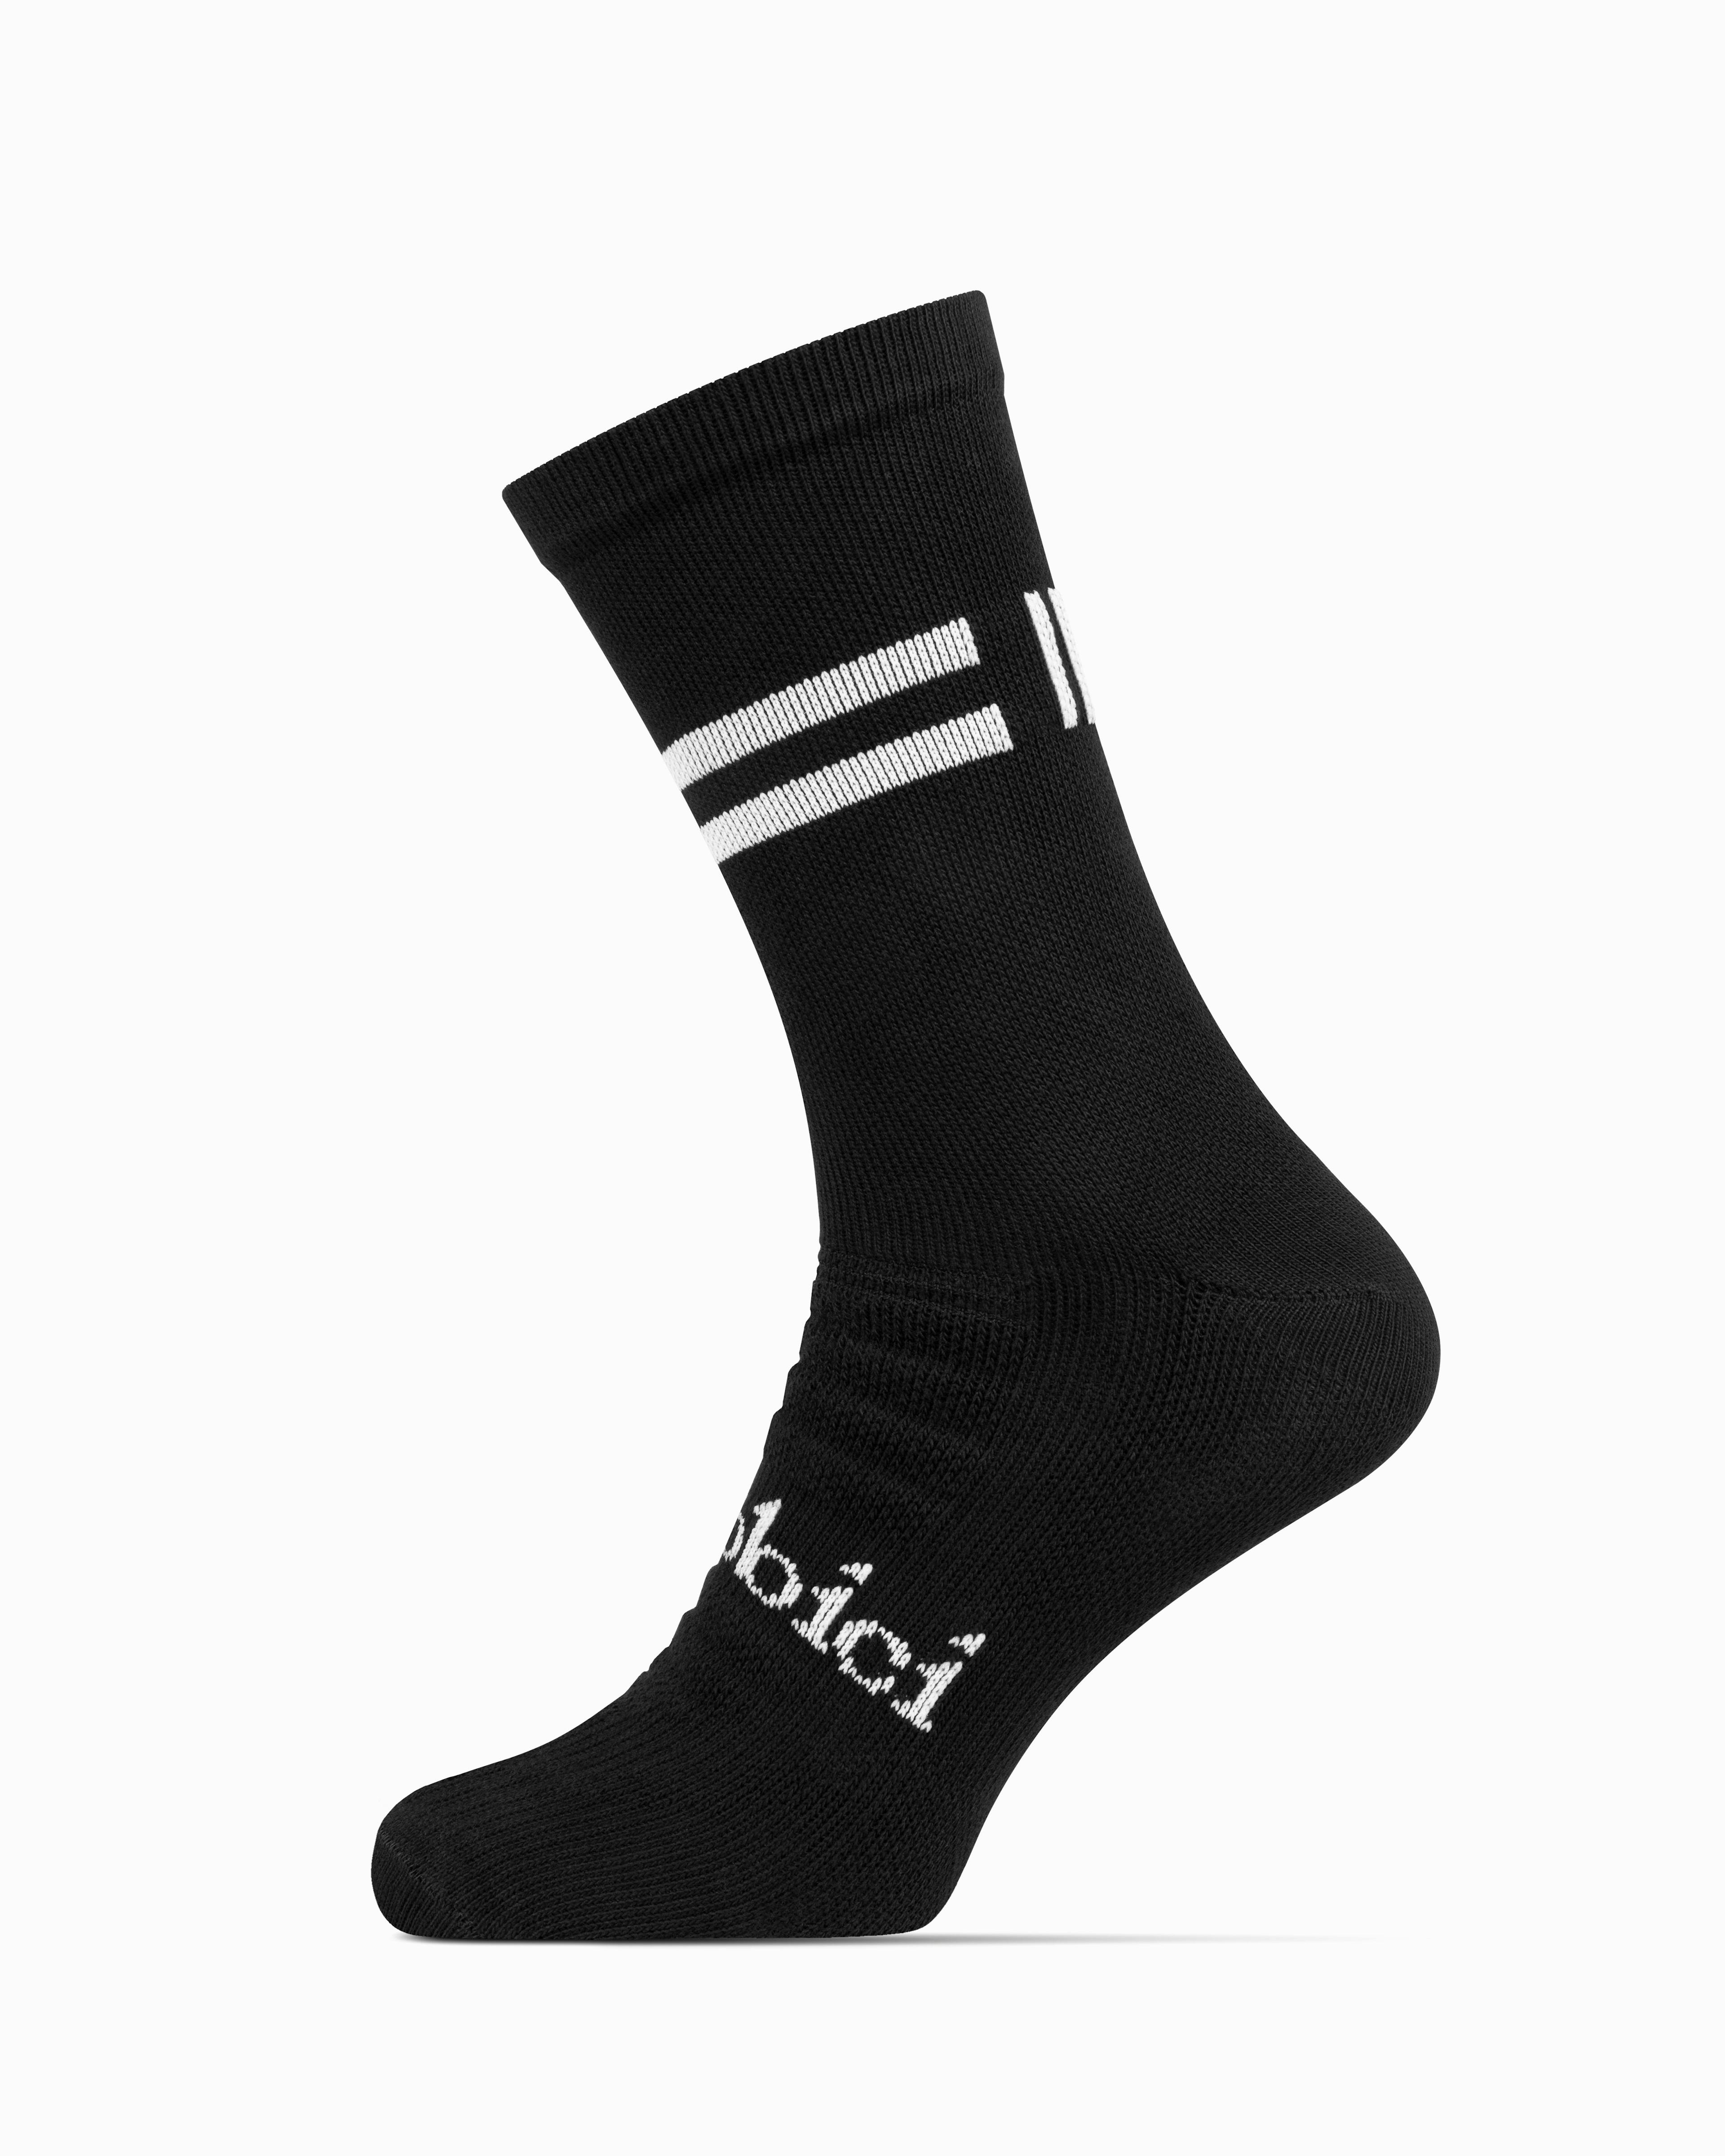 Internationalist Socks (Black)